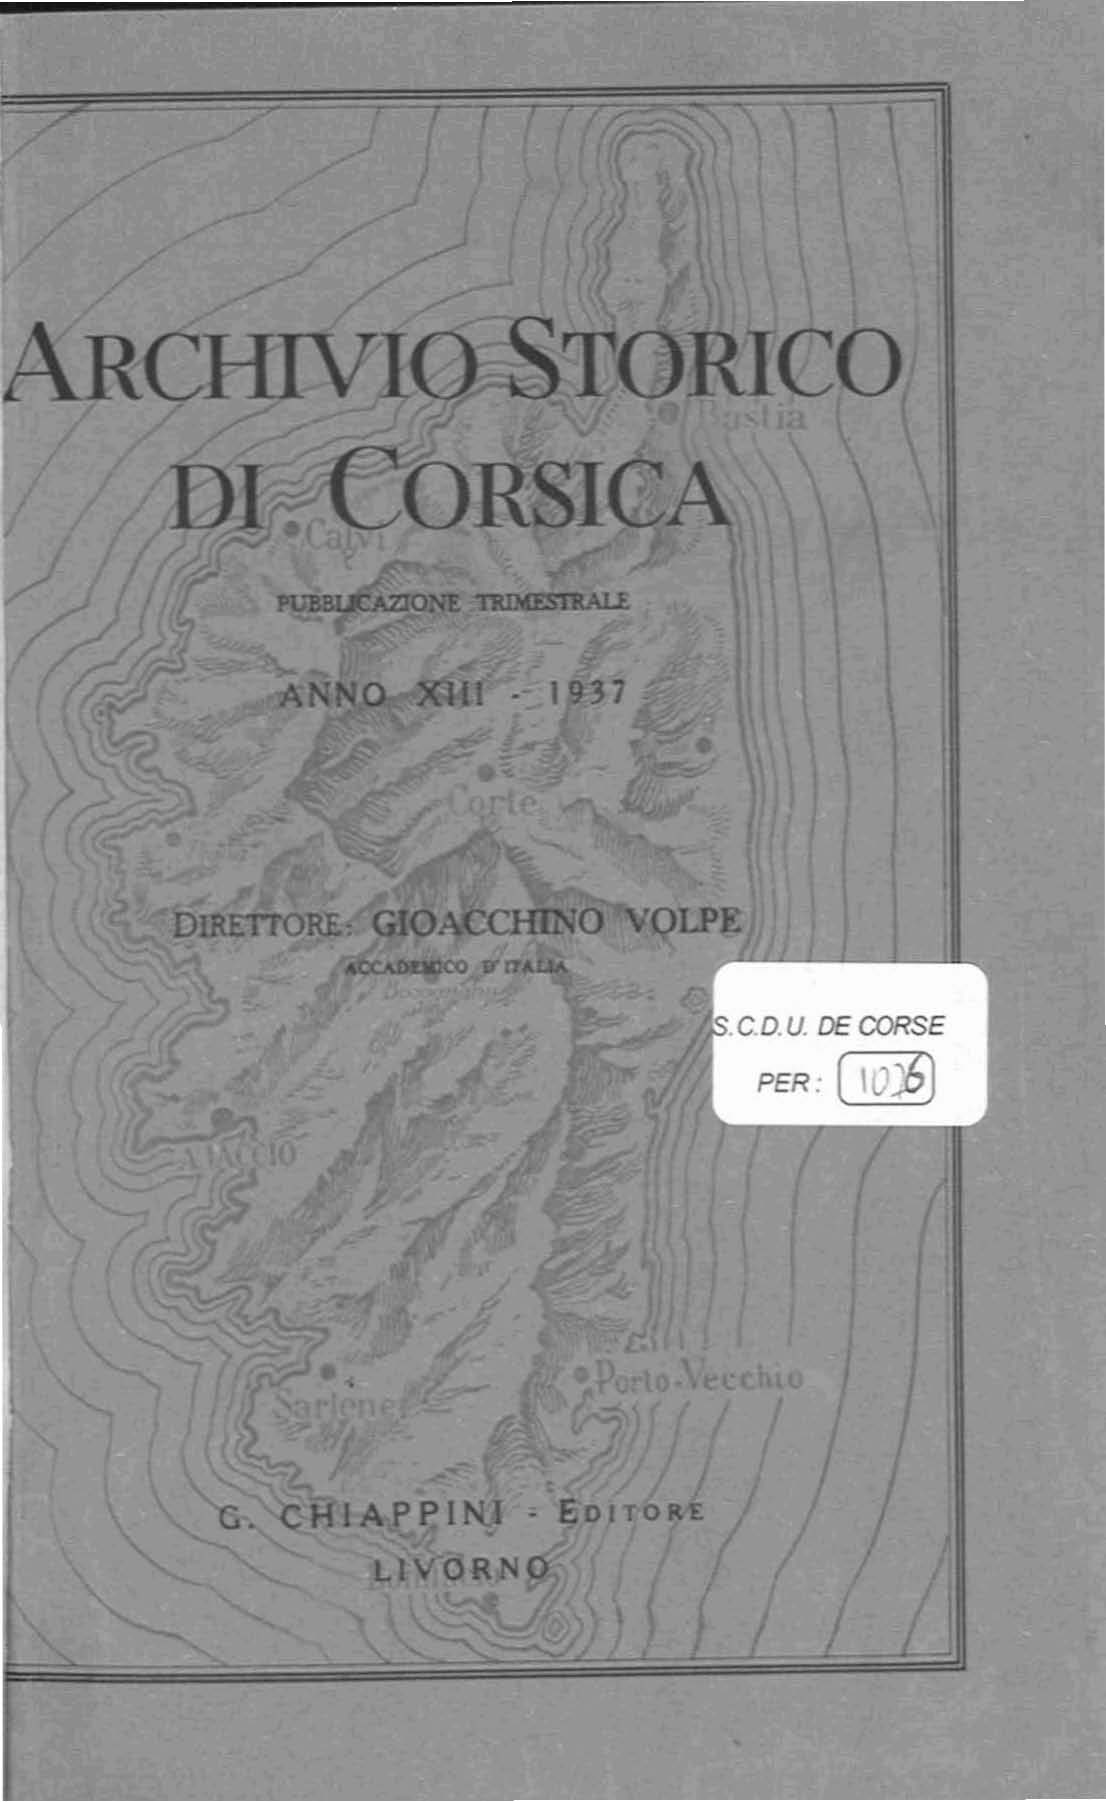 >Archivio Storico di Corsica (1937)